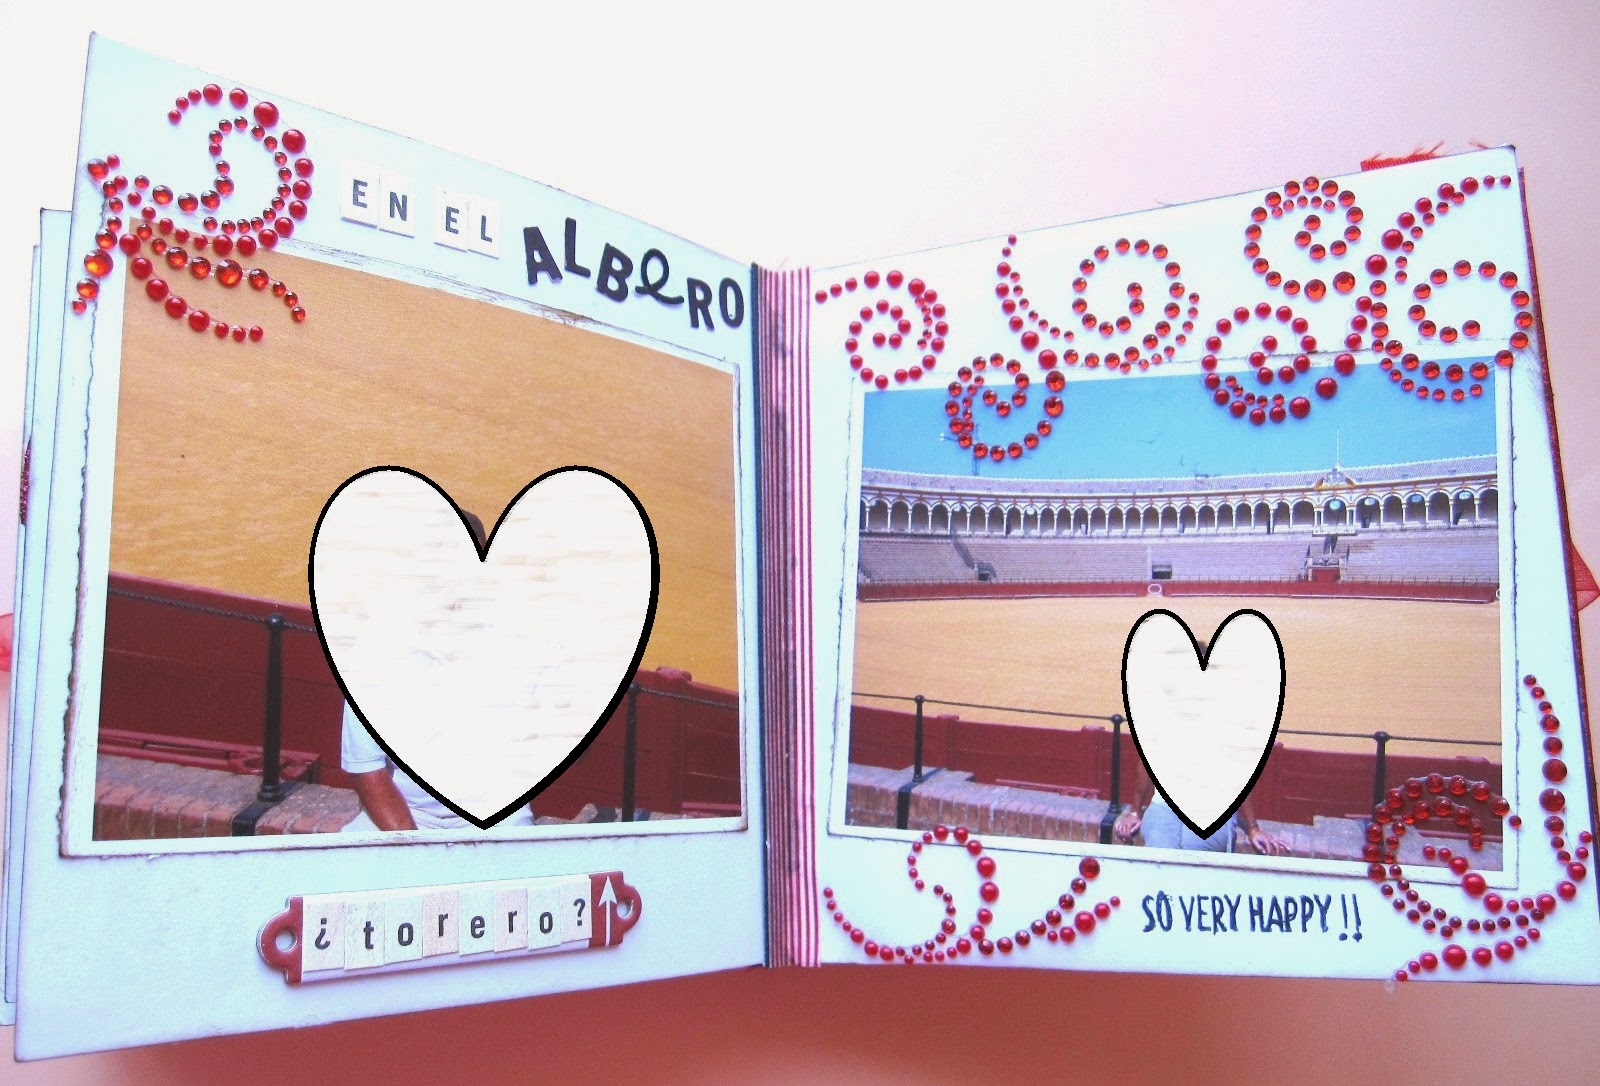 foto 5 decoración interior LOVE mini-álbum con fotos de la plaza de La Maestranza de Sevilla decoradas con filigranas de brillantes adhesivos rojos y palabras “en el albero”, “torero” y “so very happy”